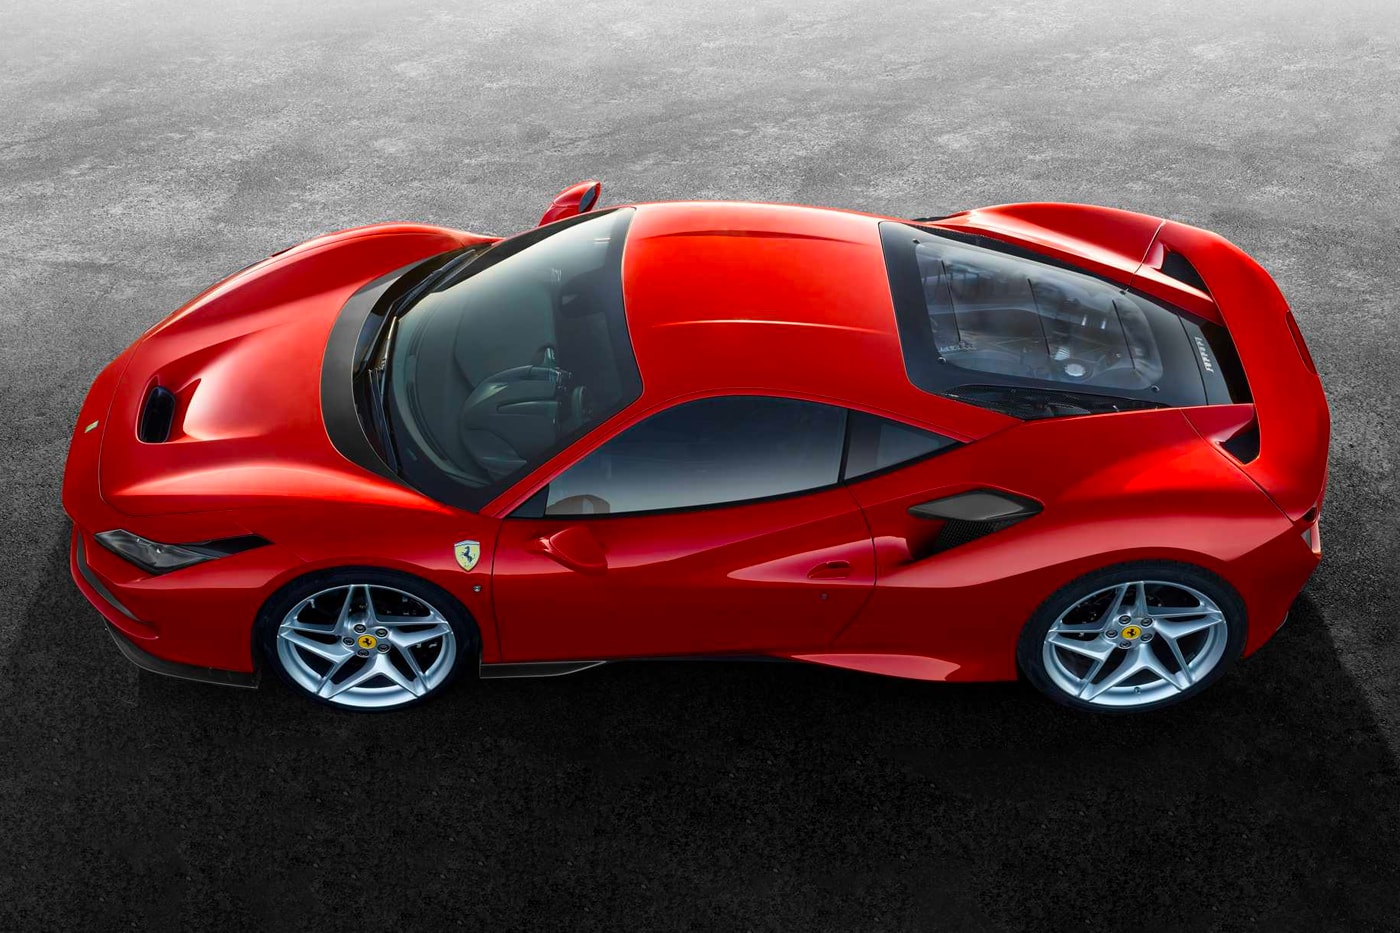 Ferrari F8 Tributo Unveiling